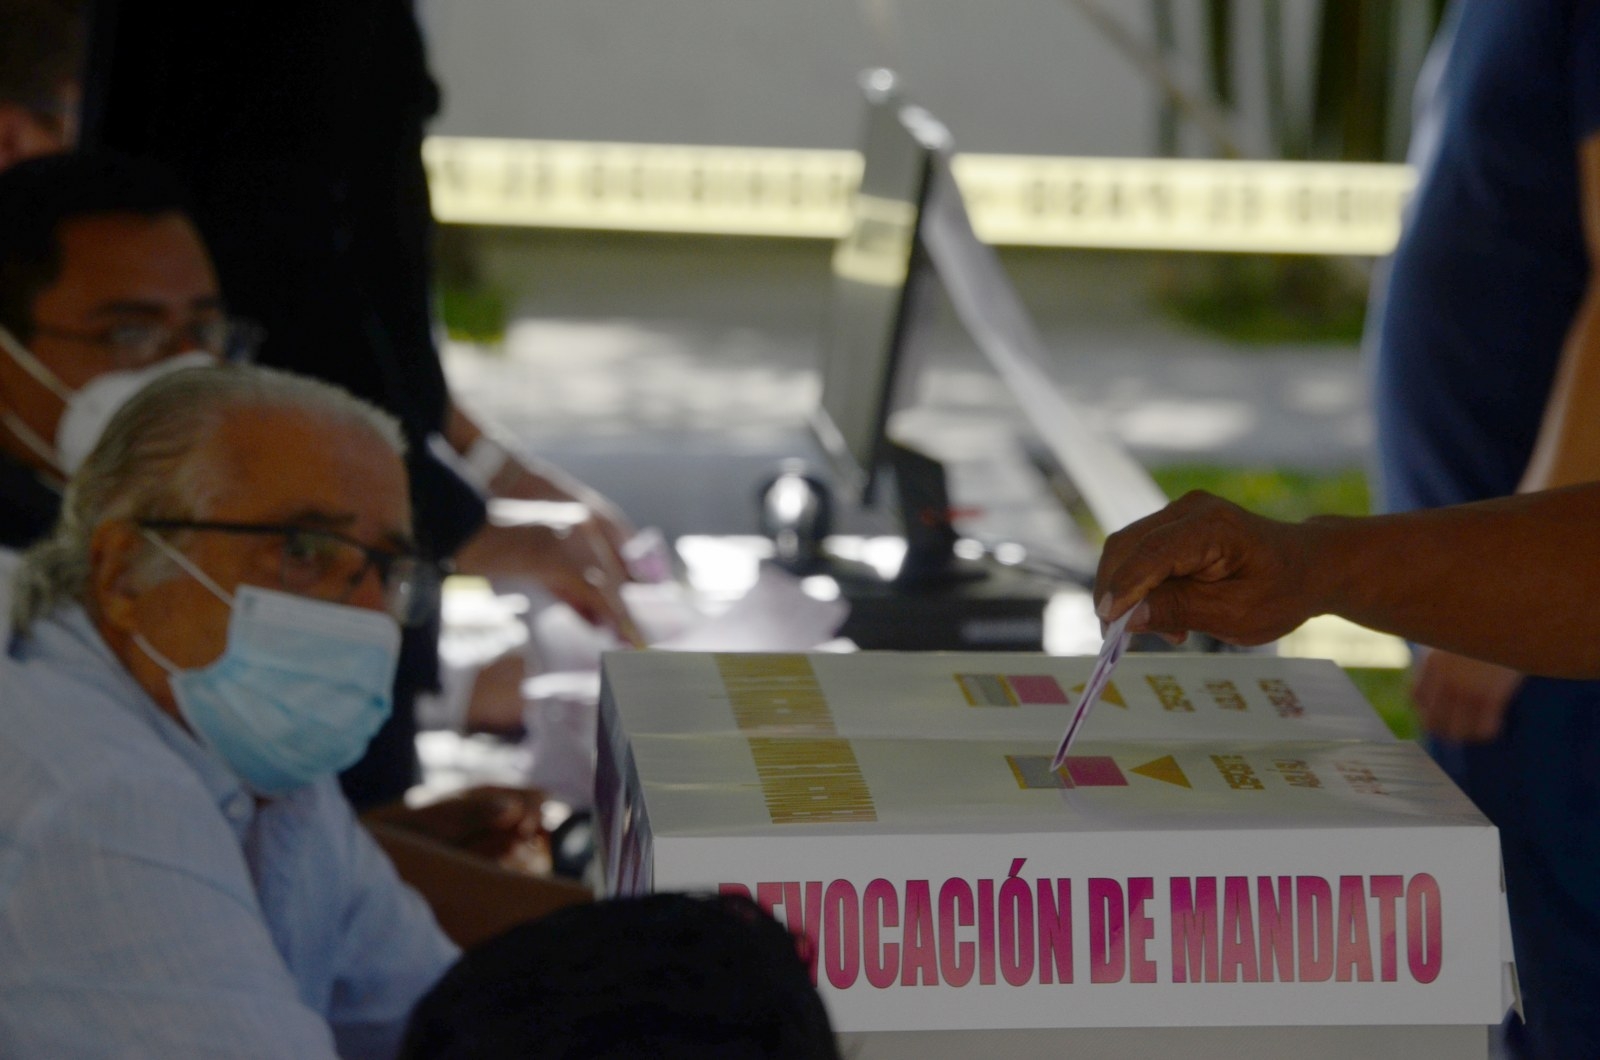 Revocación de Mandato: Más de 283 mil personas en Quintana Roo participaron en la consulta